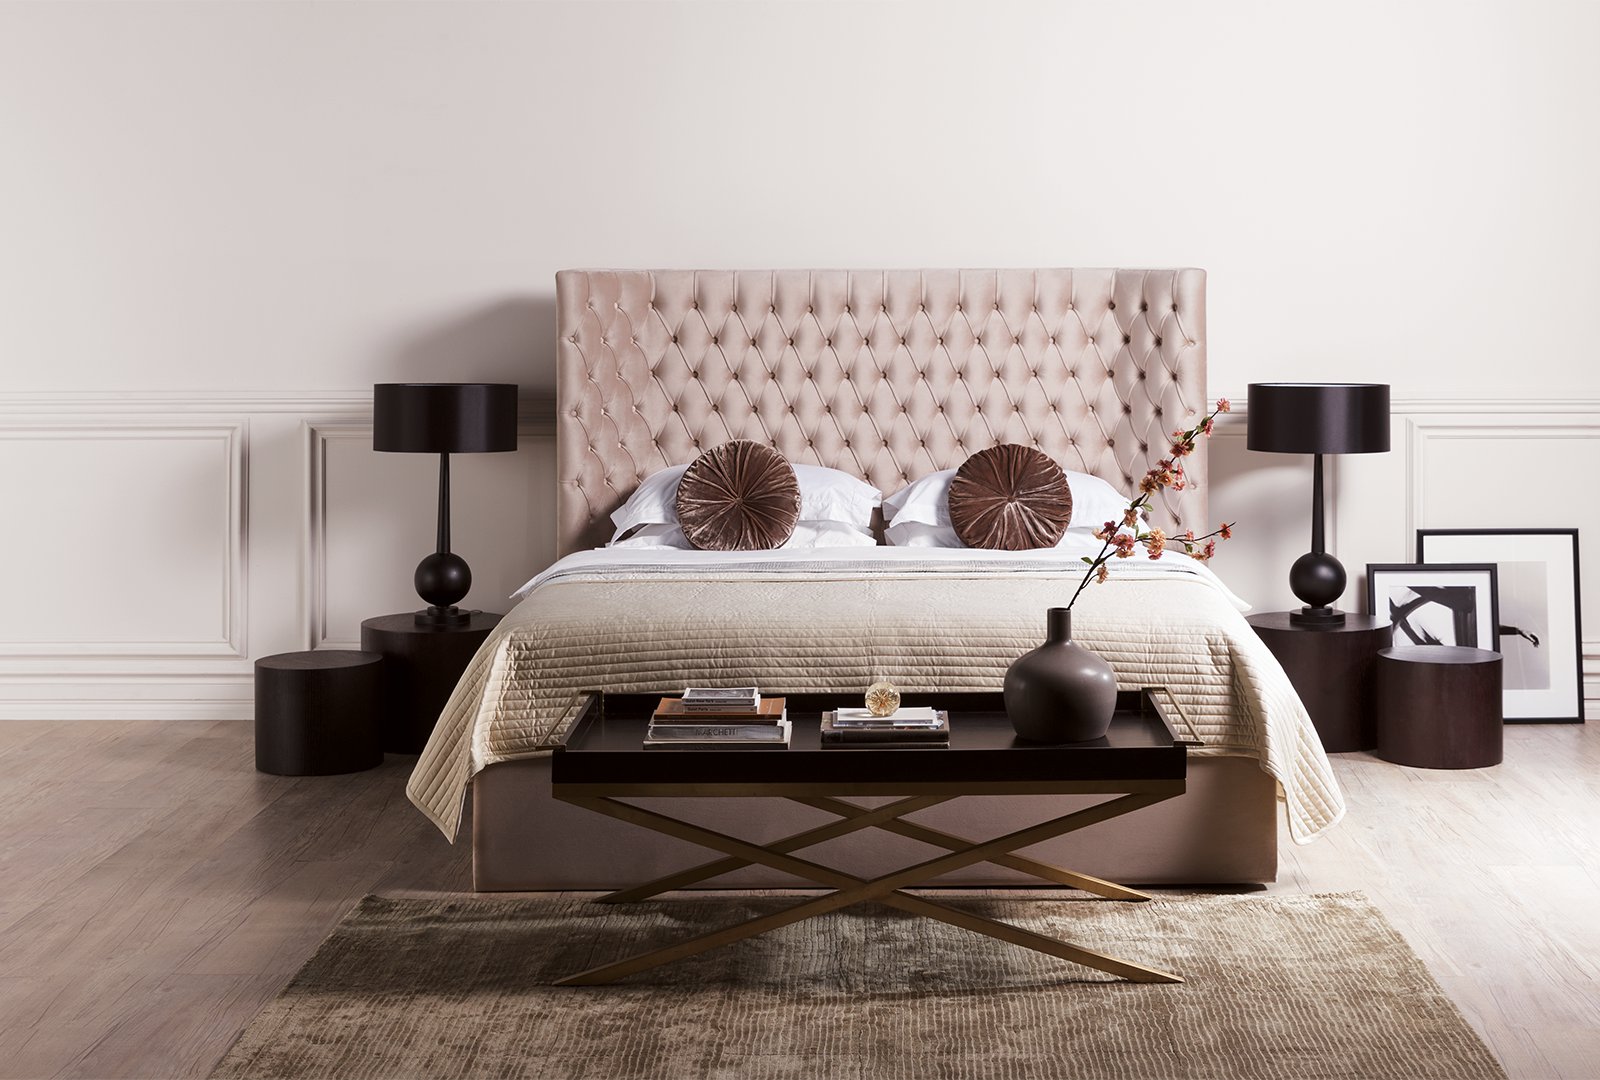 Worthy Bedframes In, Does Bed Frame Matter